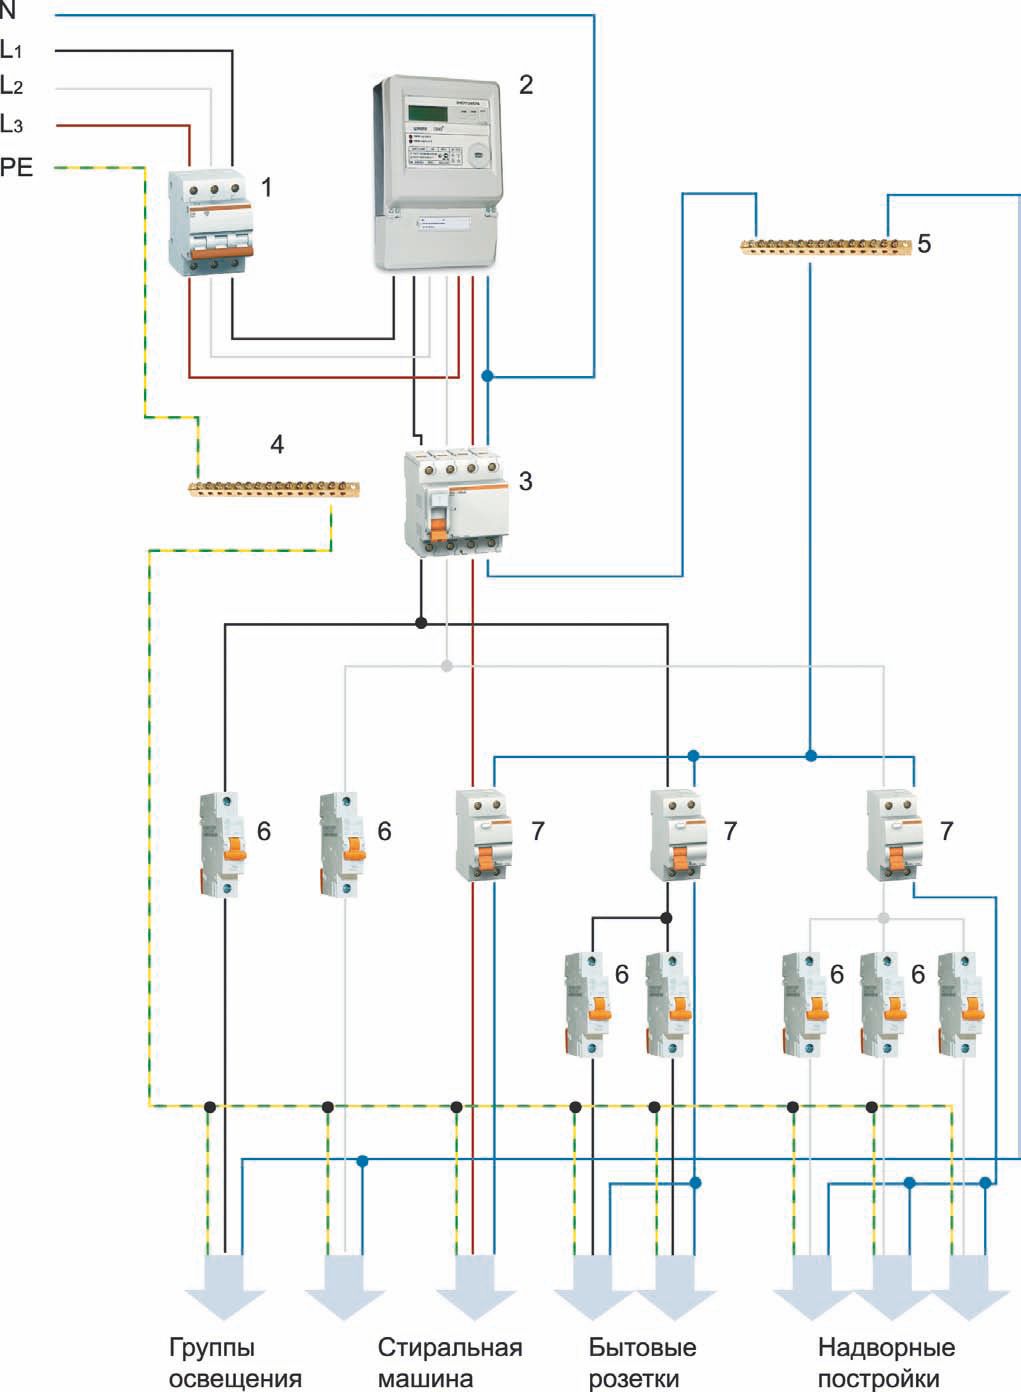 Схема трехфазного подключения в более простом варианте: 1 — вводный автомат; 2 — трехфазный электросчетчик; 3 — дифавтомат; 4 – шина заземления; 5 – нолевая шина; 6 — модульные автоматические выключатели; 7 — однополюсные дифавтоматы